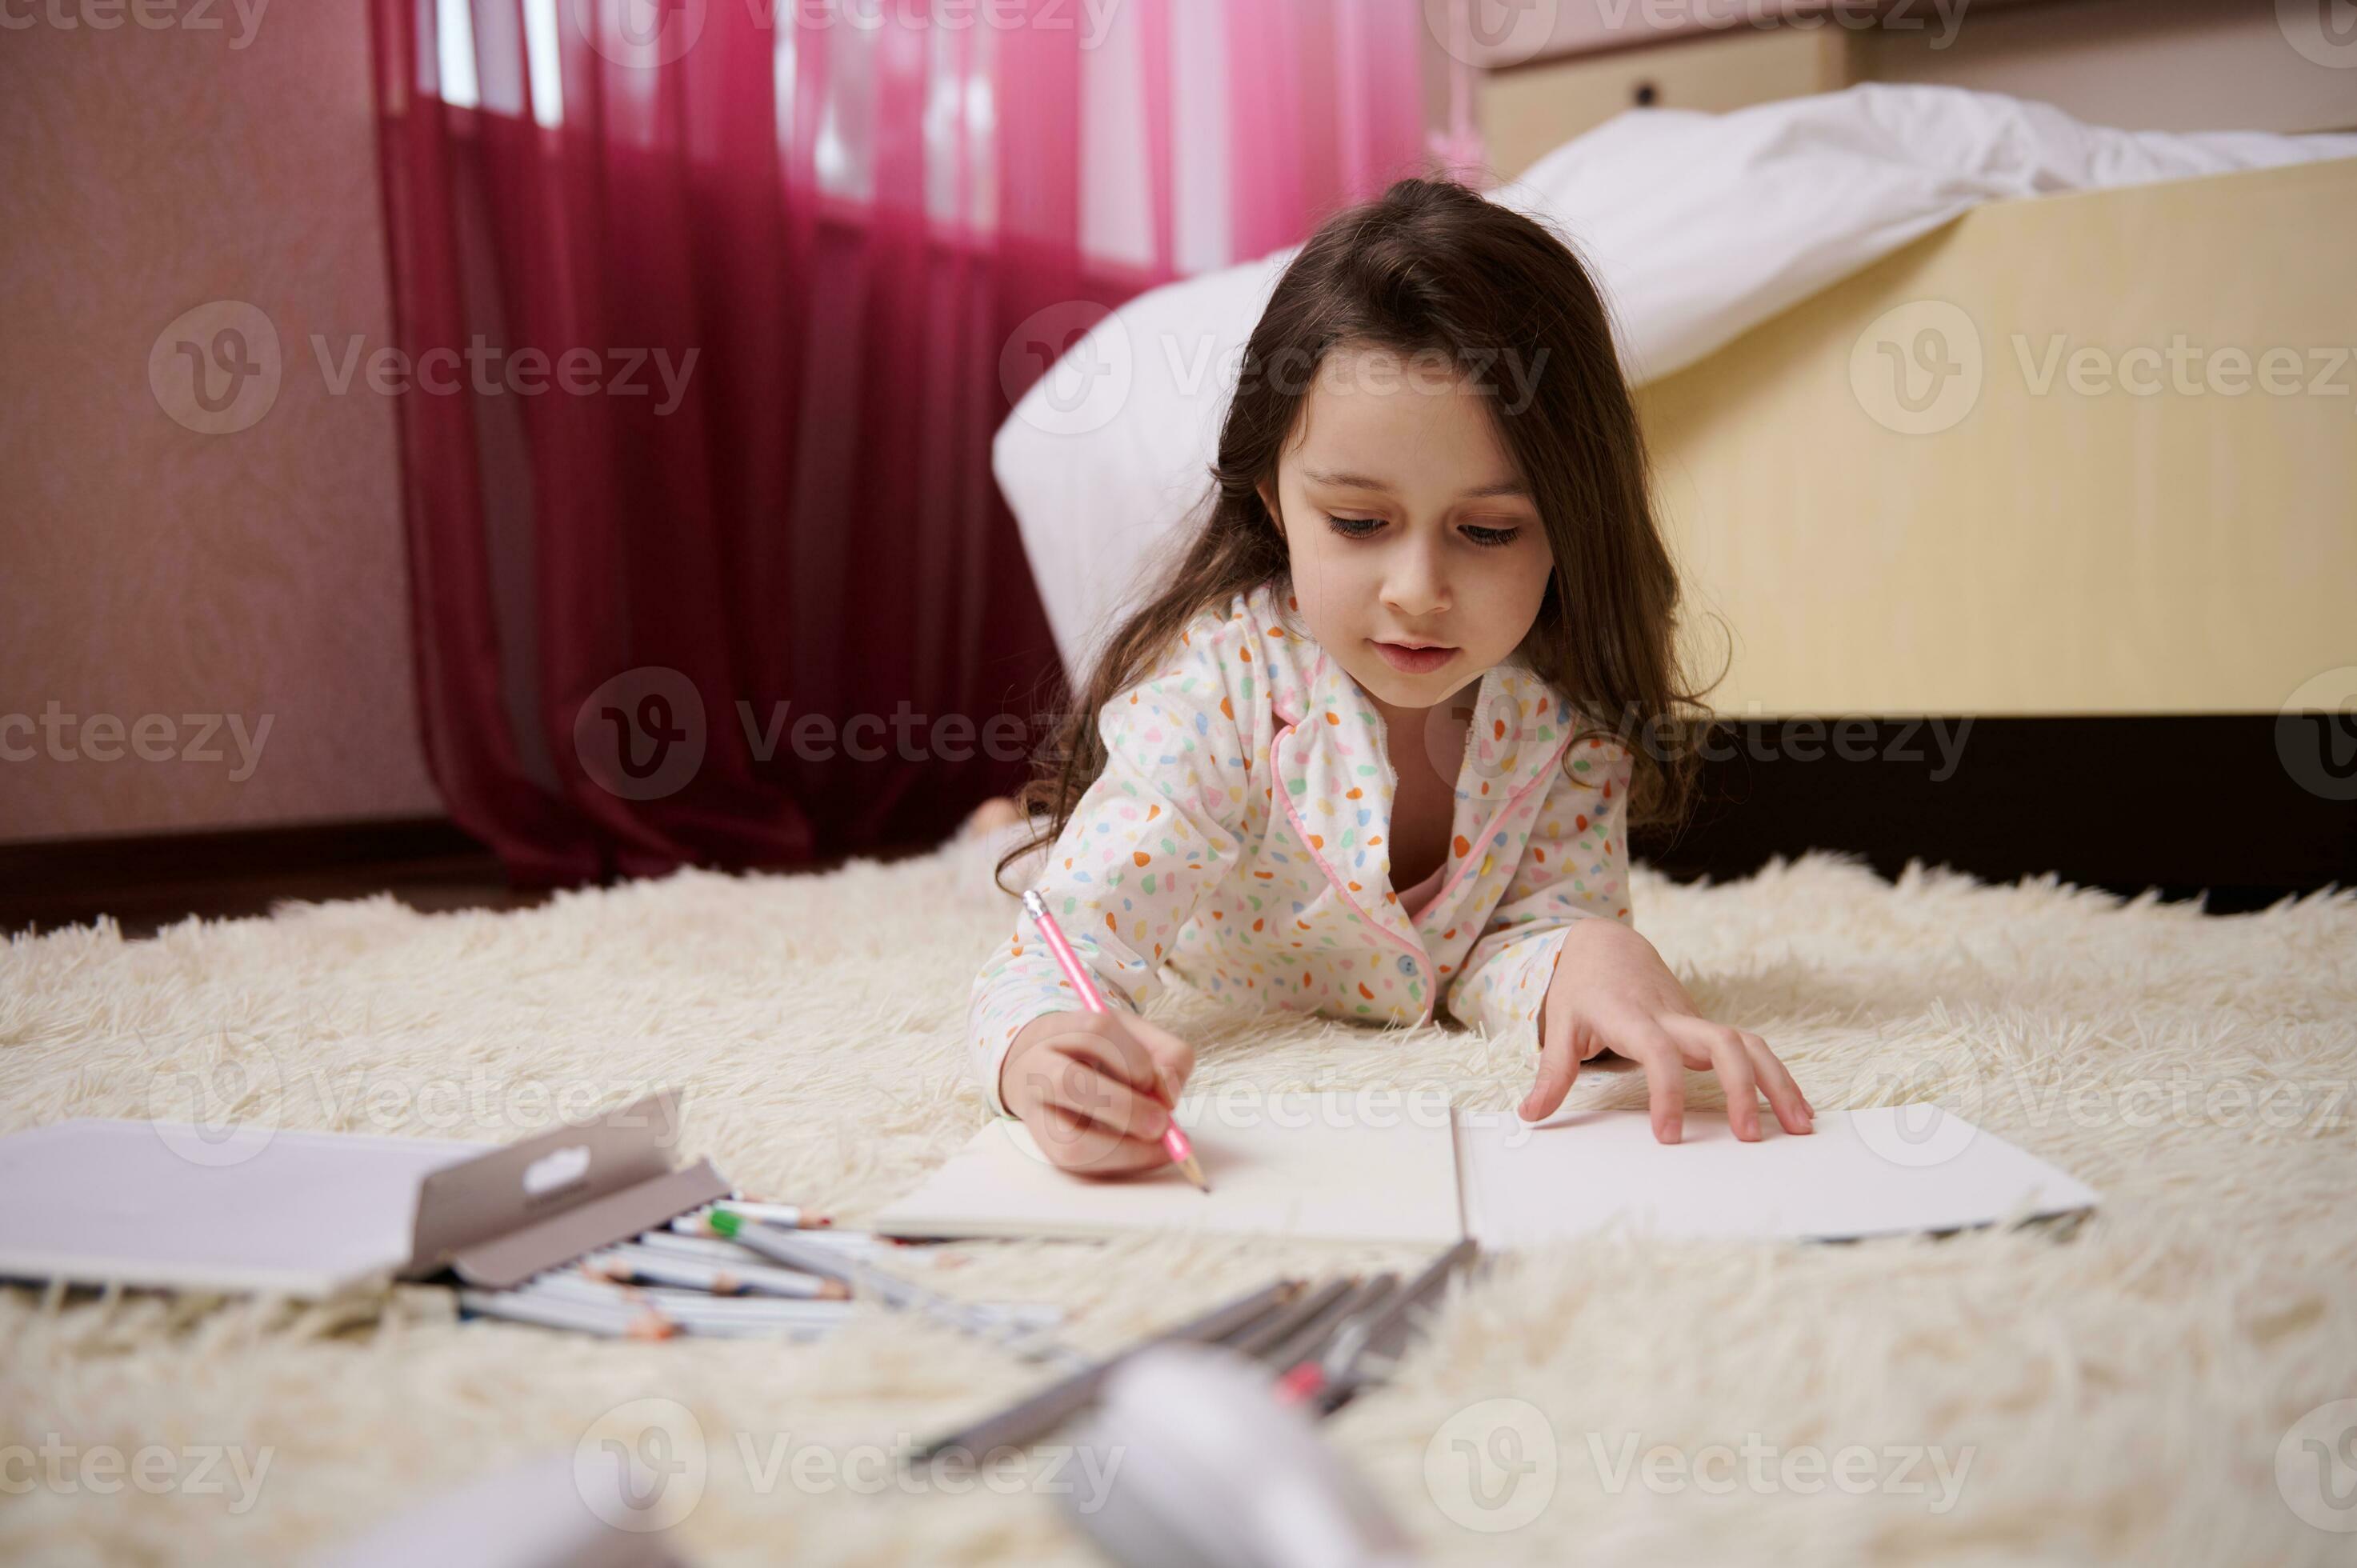 Kilometers Scherm George Eliot lief weinig meisje in pyjama, aan het liegen naar beneden Aan tapijt in  slaapkamer, geconcentreerd Aan tekening afbeelding met kleurrijk potloden  23730679 stockfoto bij Vecteezy